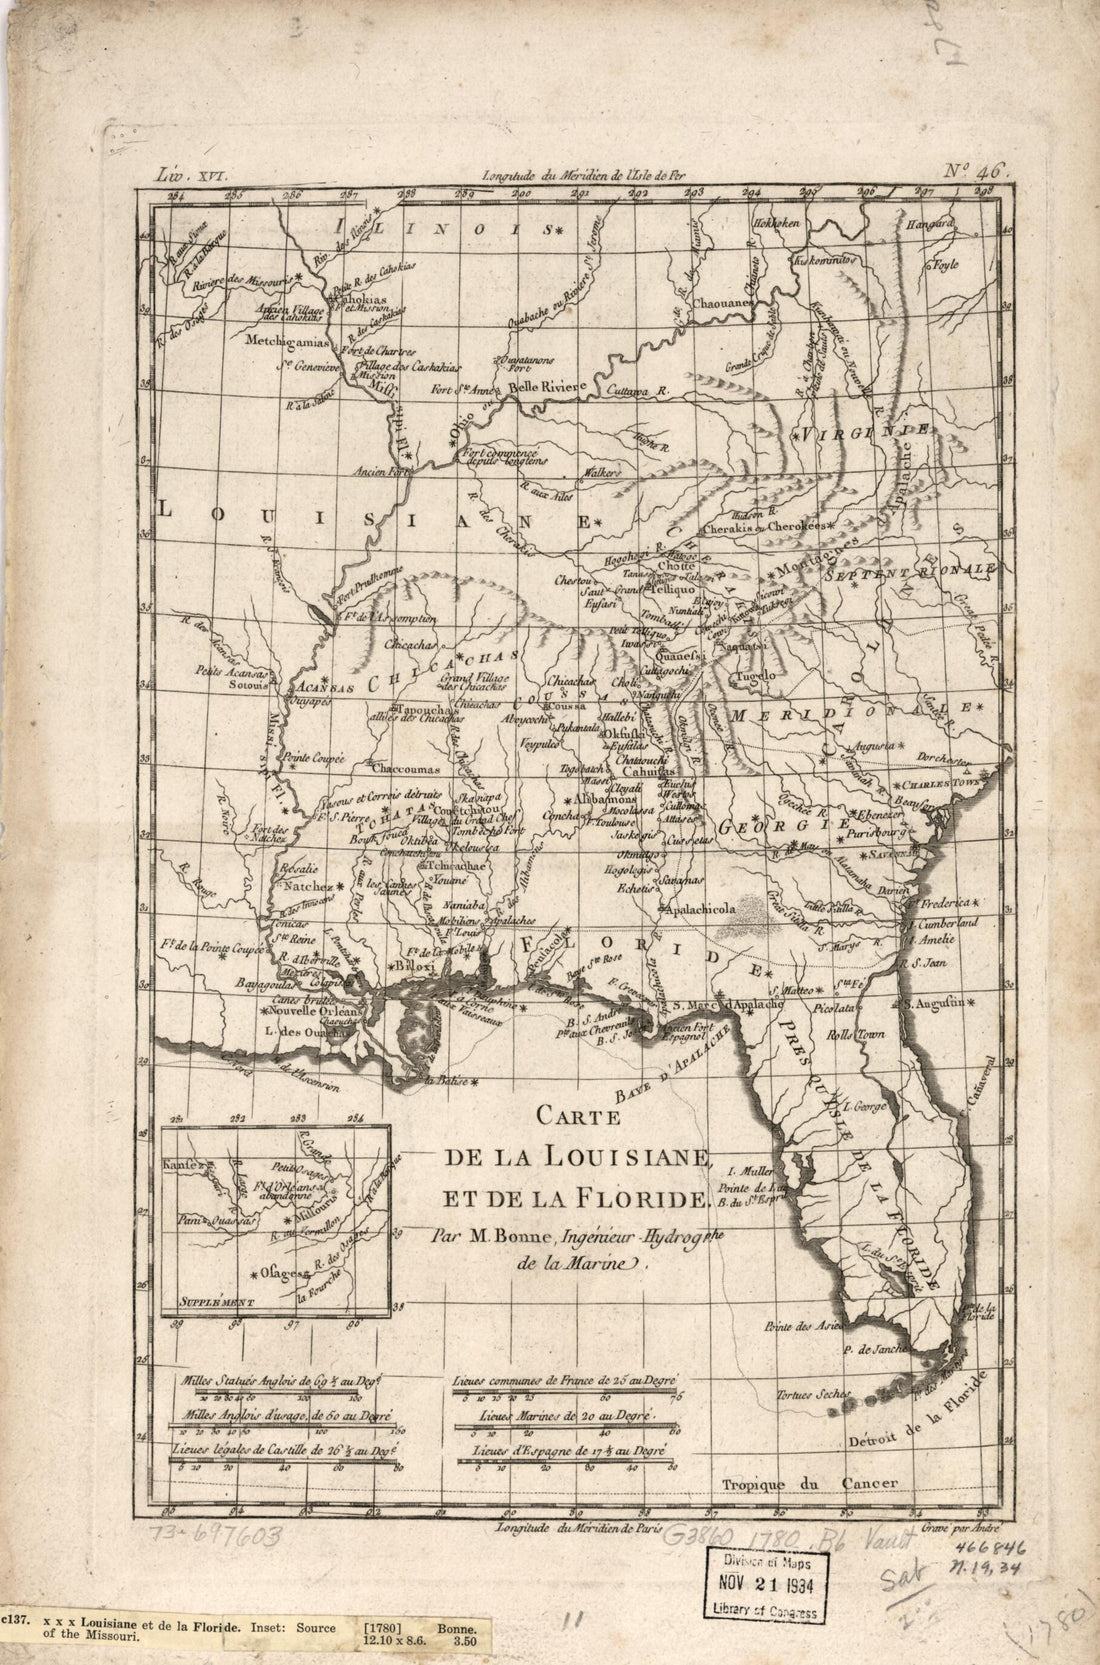 This old map of Carte De La Louisiane, Et De La Floride from 1780 was created by Peter André, Rigobert Bonne in 1780